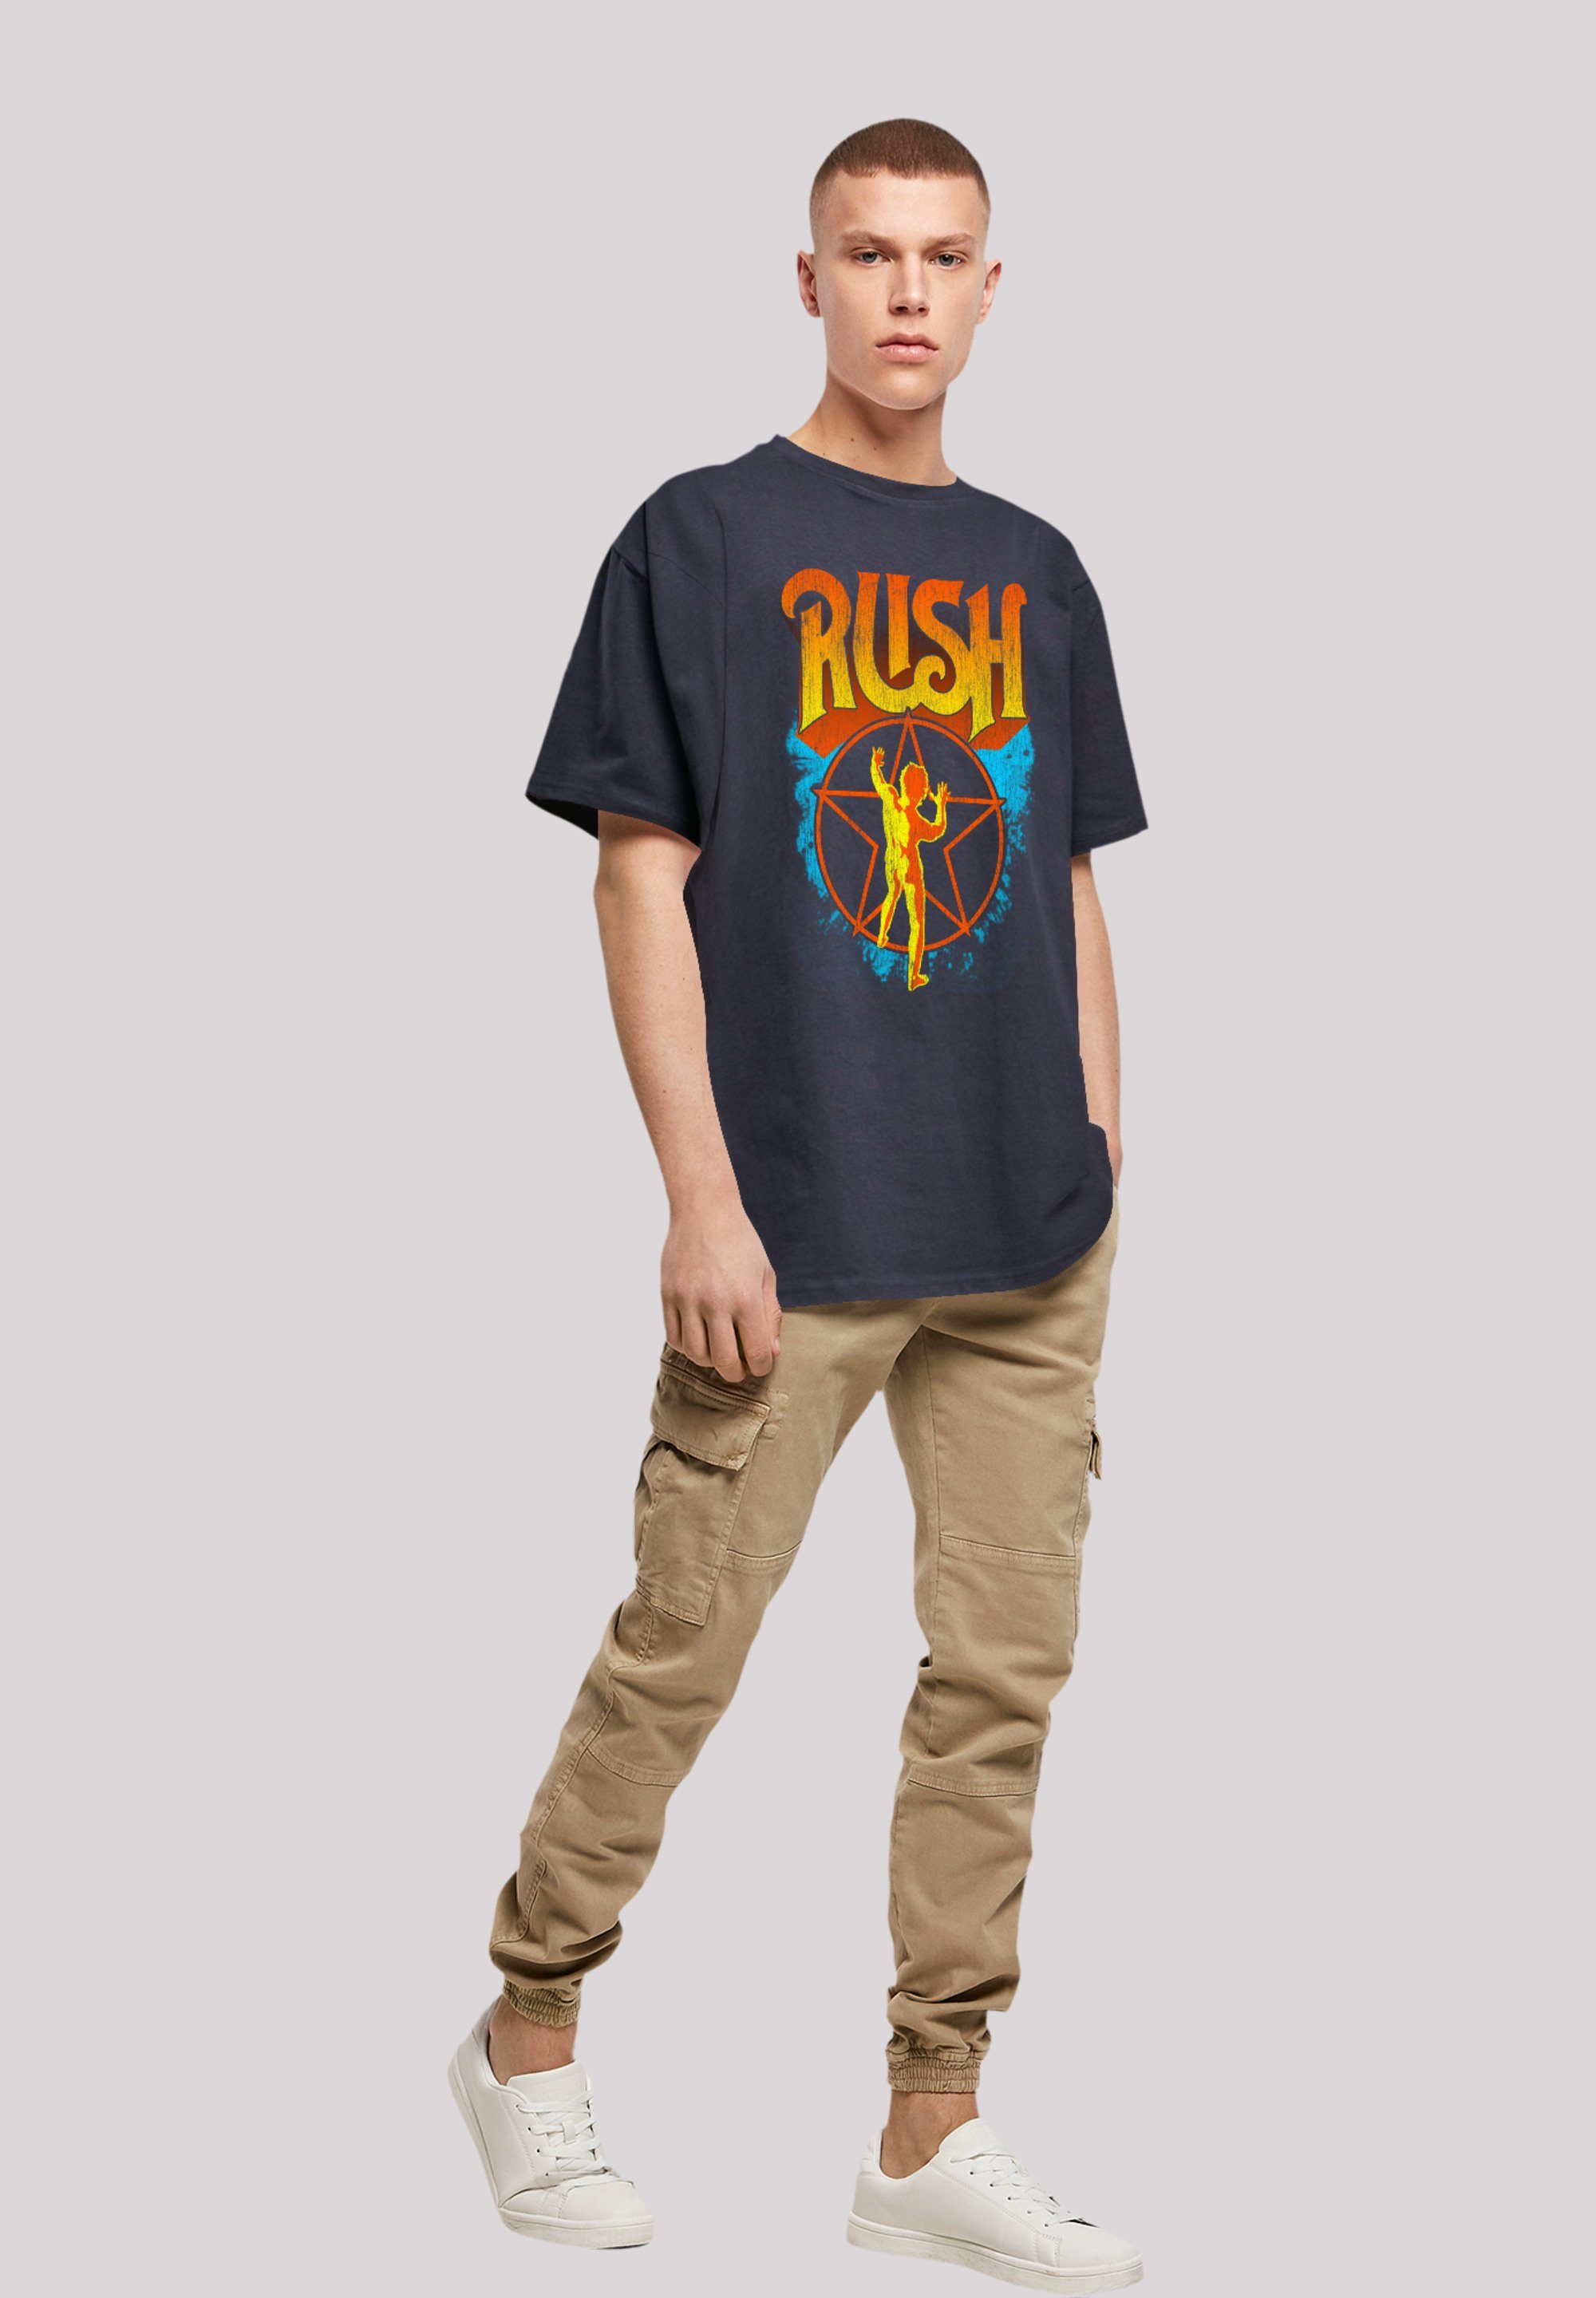 F4NT4STIC T-Shirt Premium Rush Qualität Rock Starman navy Band